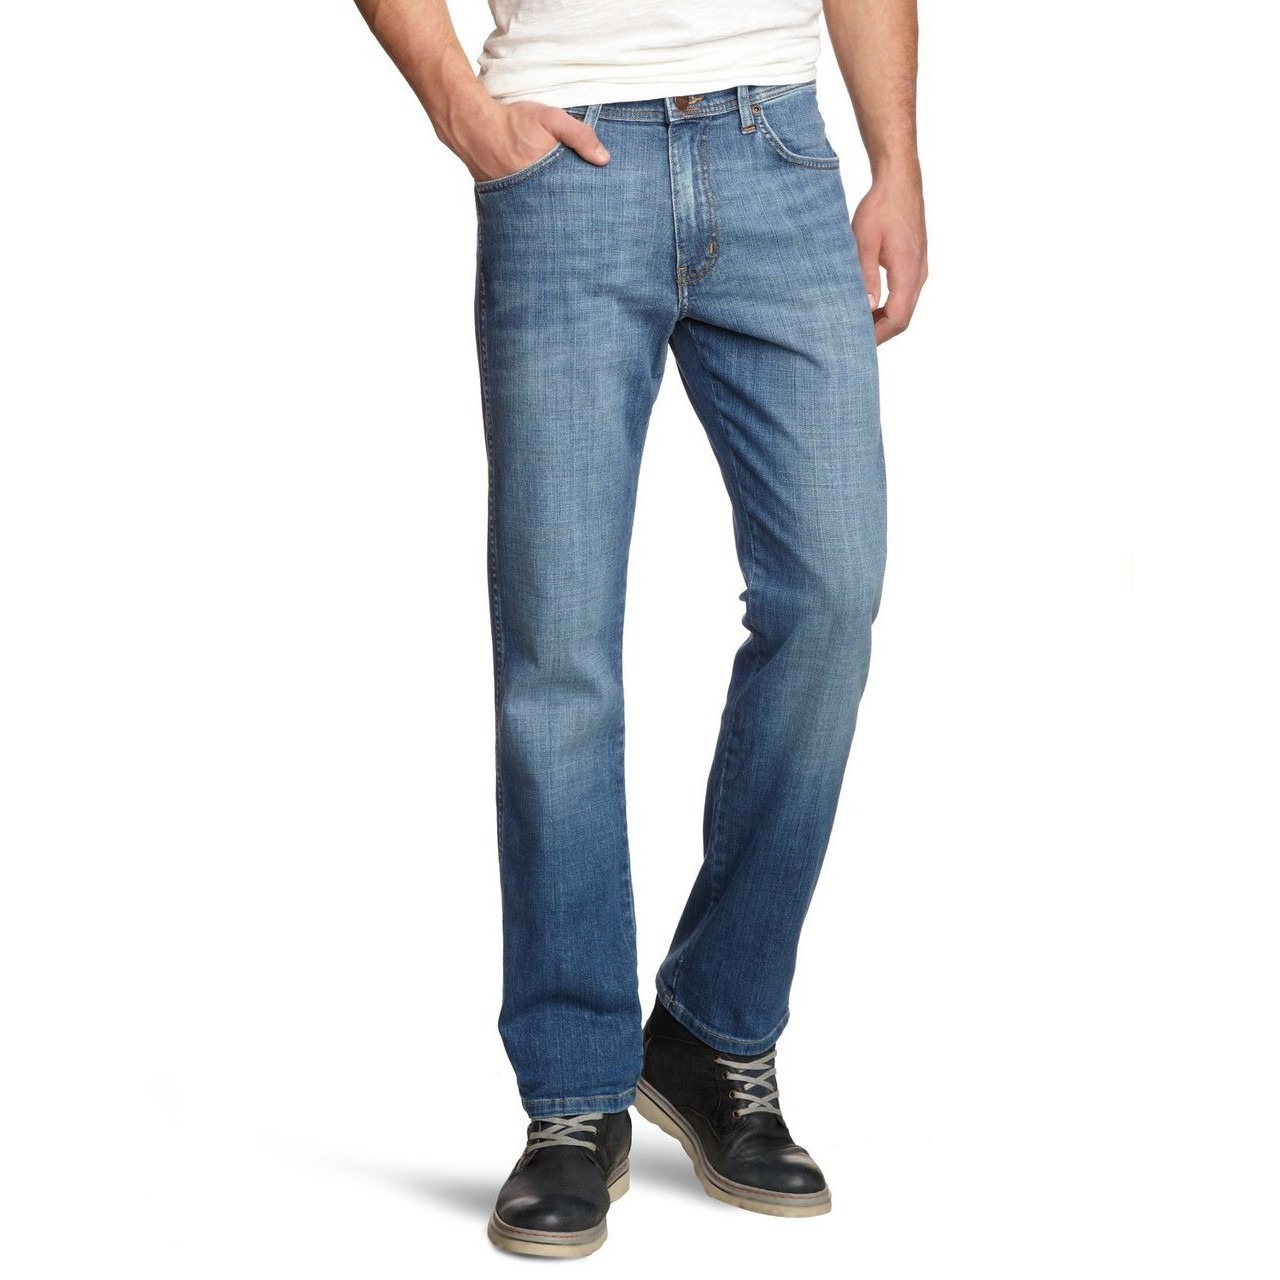 Grosir Distributor Celana Jeans Wrangler 05 Harga Murah Bagus Berkualitas